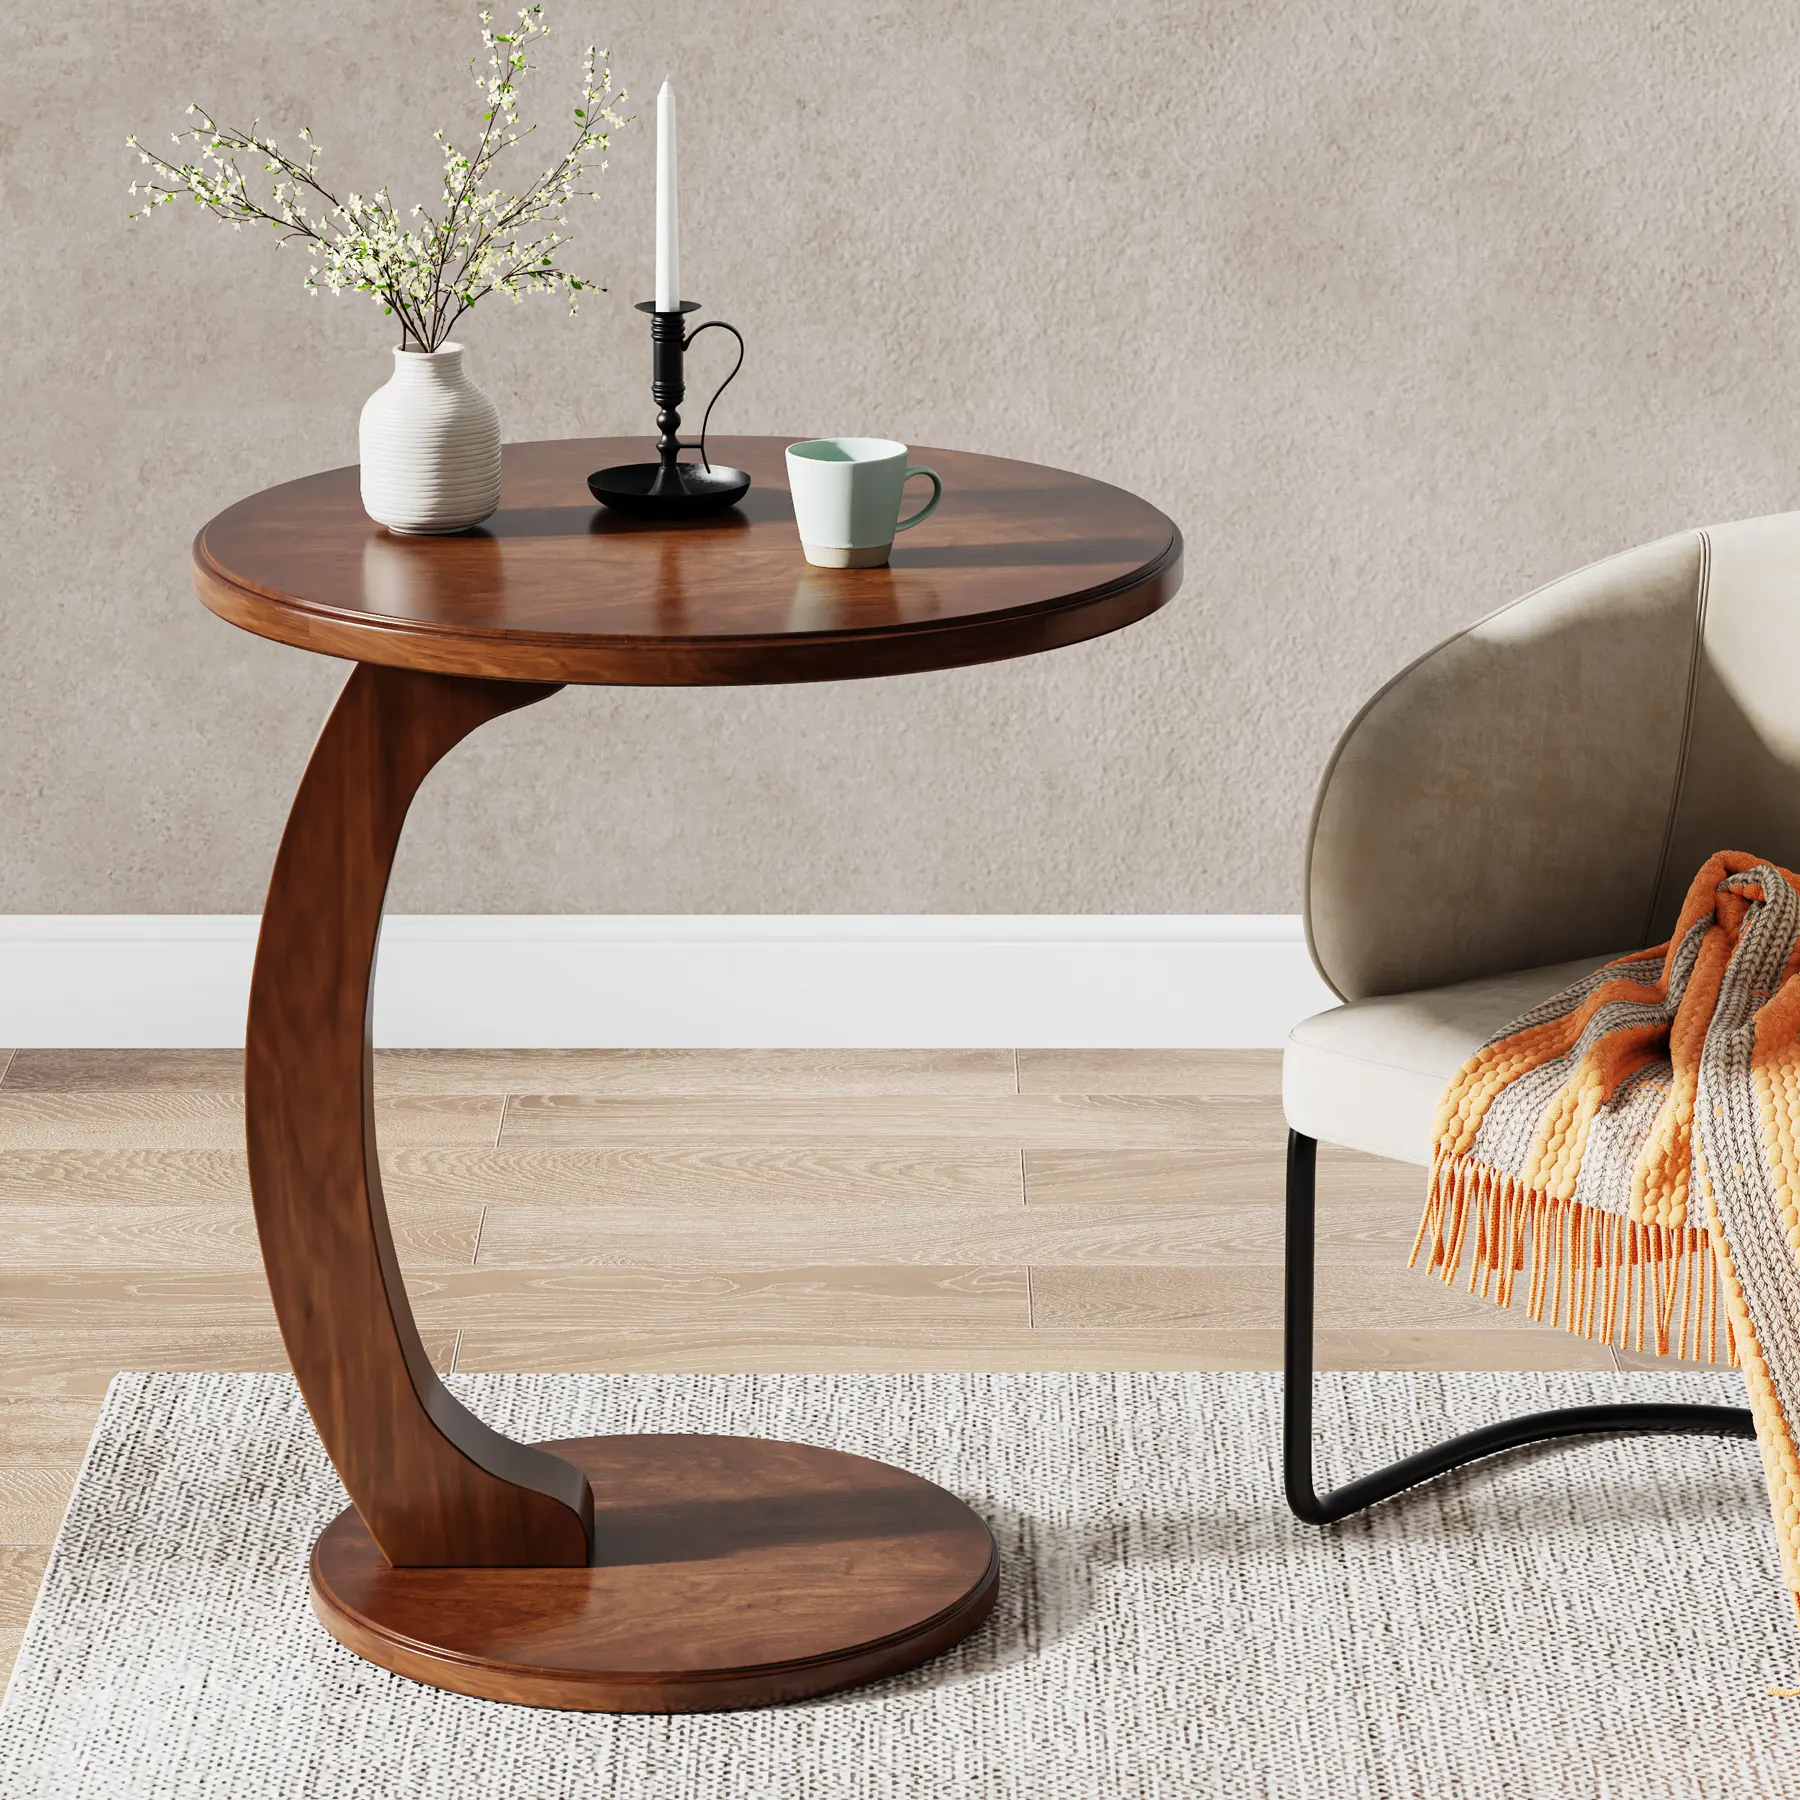 Tribesigns โต๊ะทำจากไม้จริงรูปตัวซีทำจากไม้จีนกลางศตวรรษโต๊ะข้างเตียงเฟอร์นิเจอร์ห้องนั่งเล่น